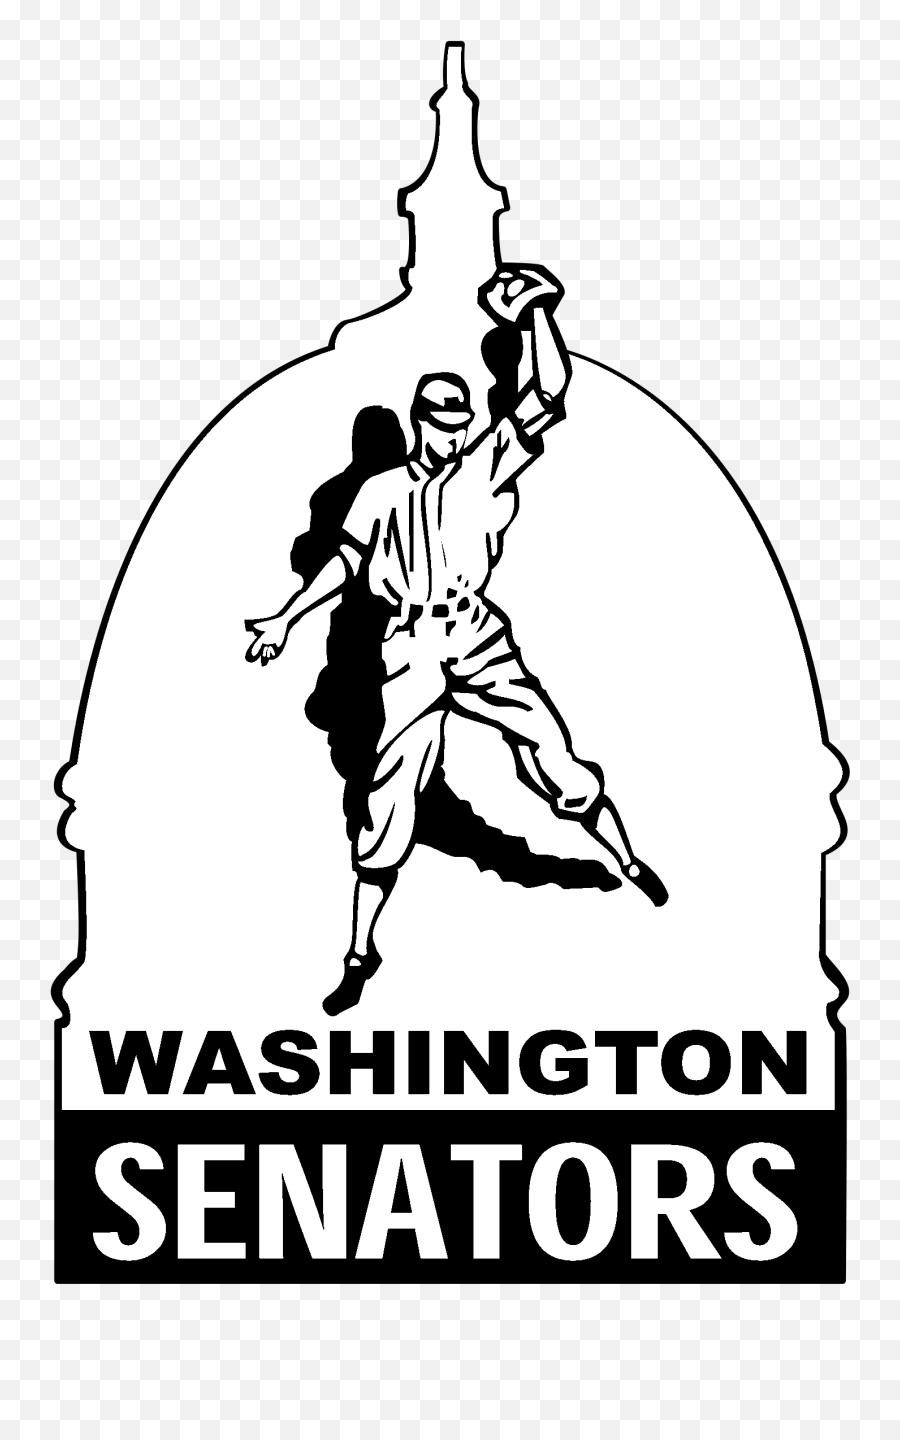 Washington Senators Logo Png - Washington Senators Logo Black And White Emoji,Washington Senators Logo